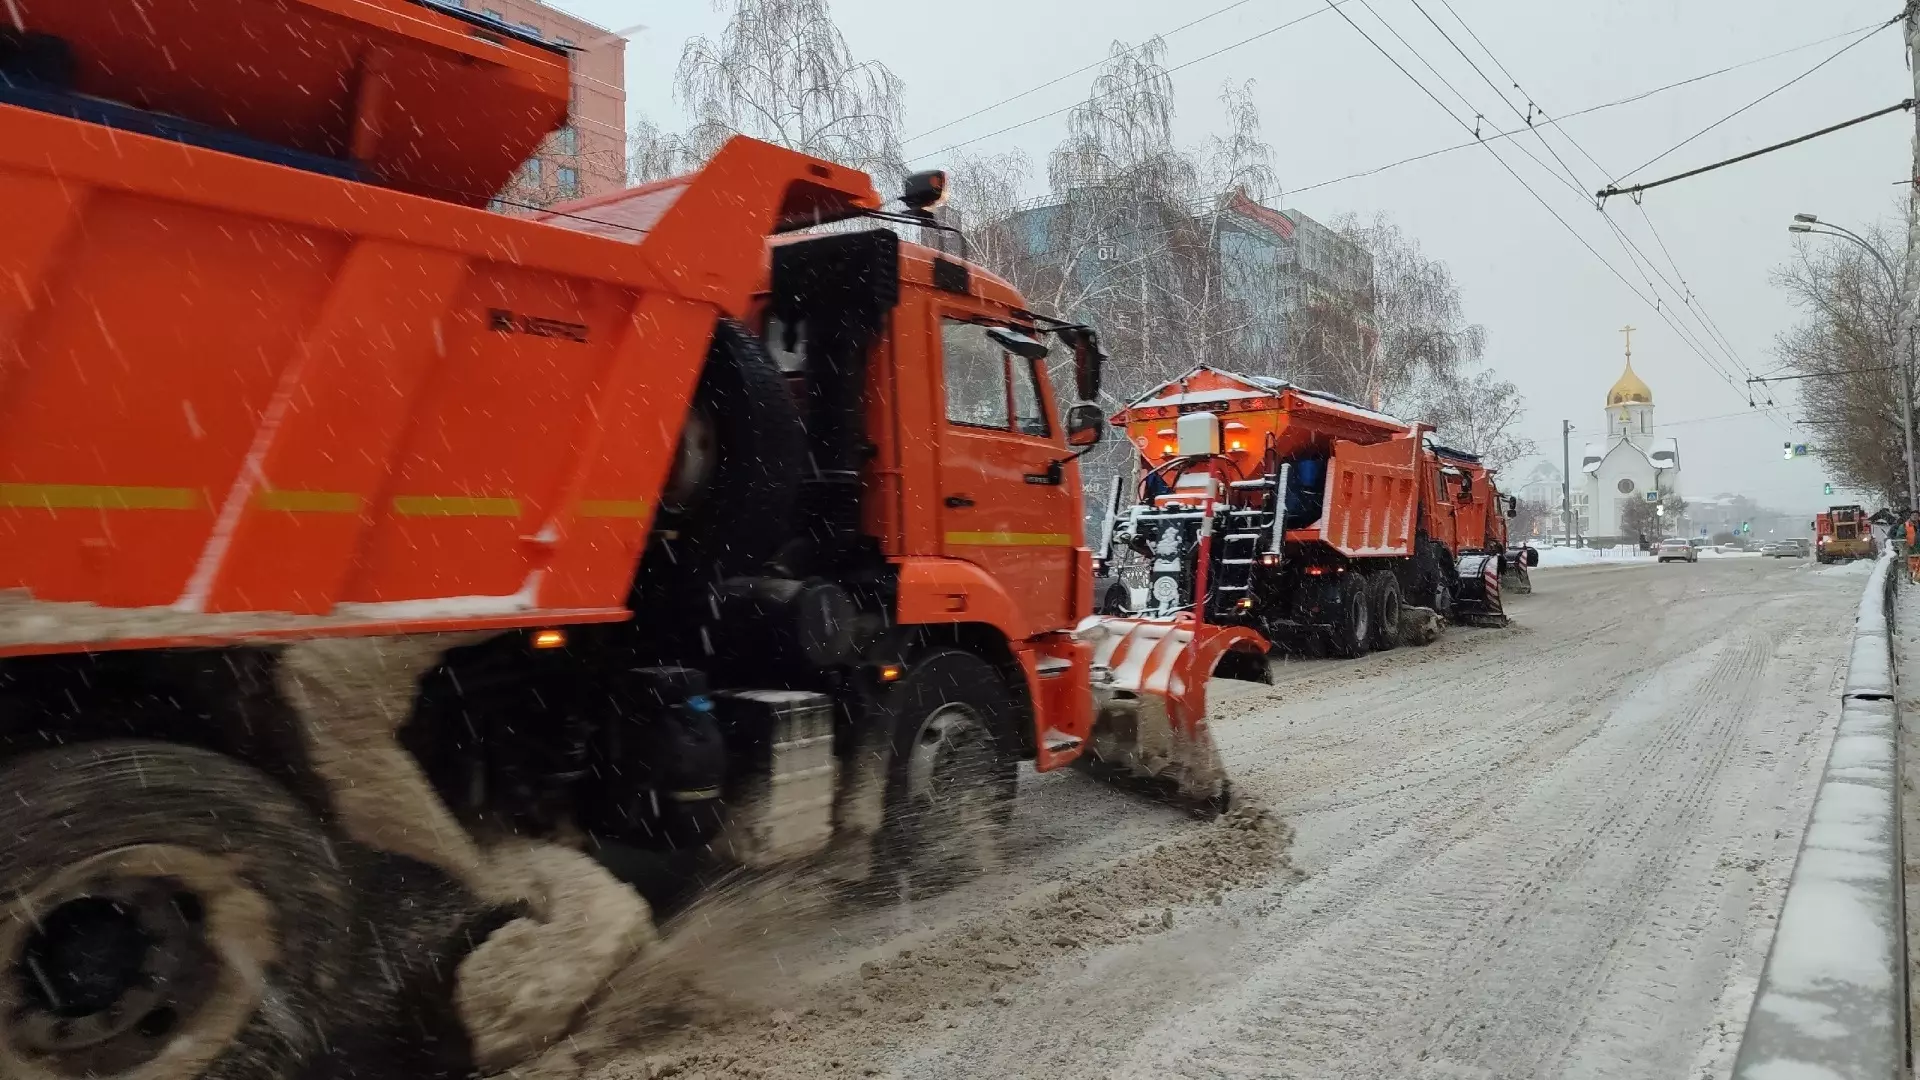 Губернатор указал и. о. мэра Клемешову на важность уборки всех улиц Новосибирска